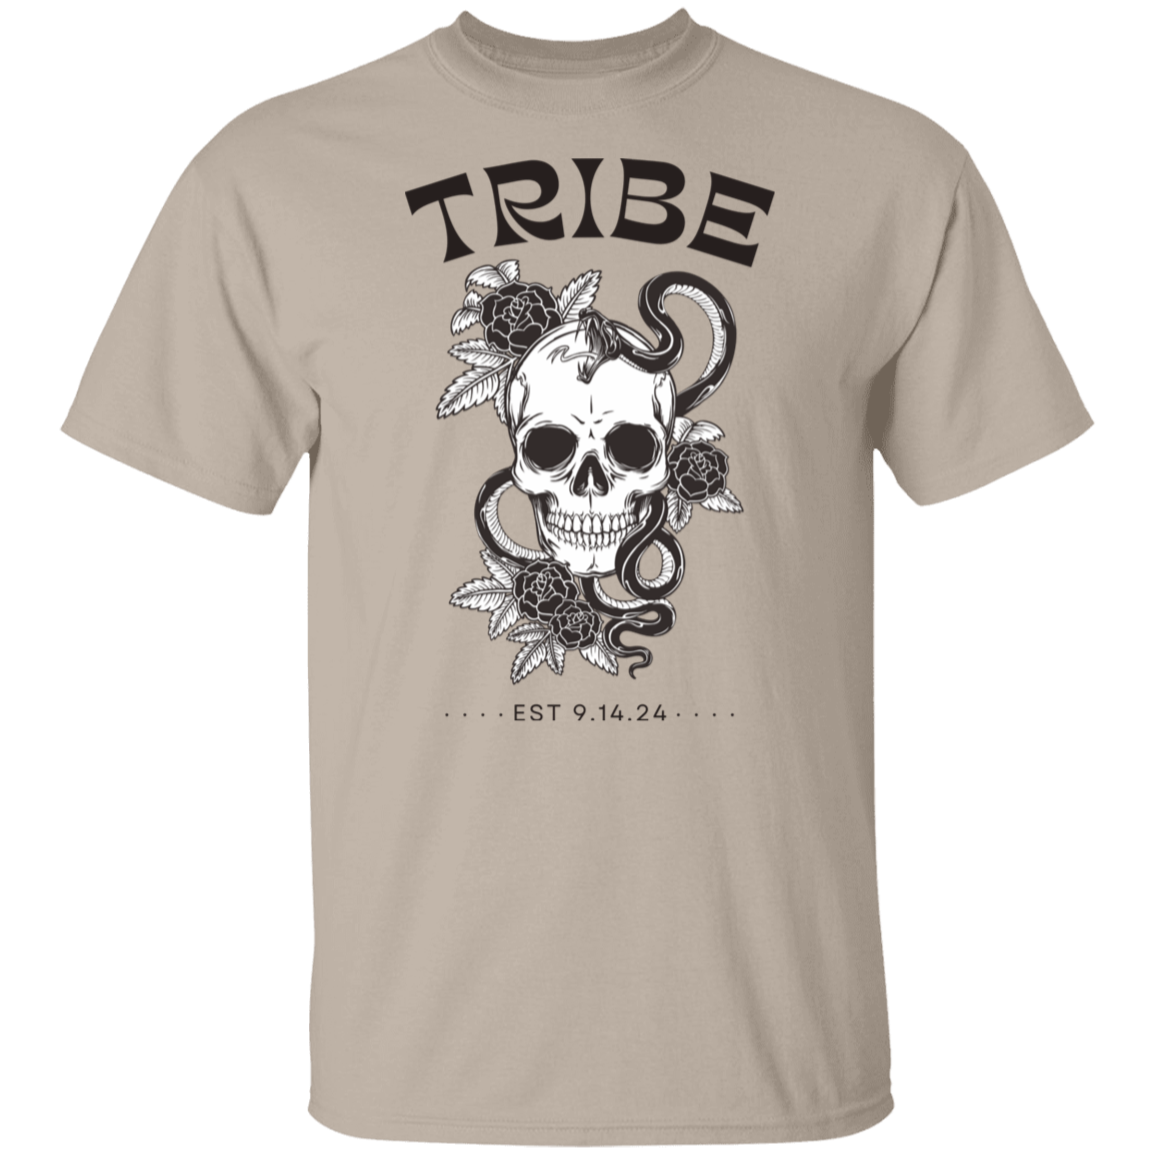 Bride/ Tribe T-Shirt, Bridesmaid's shirts